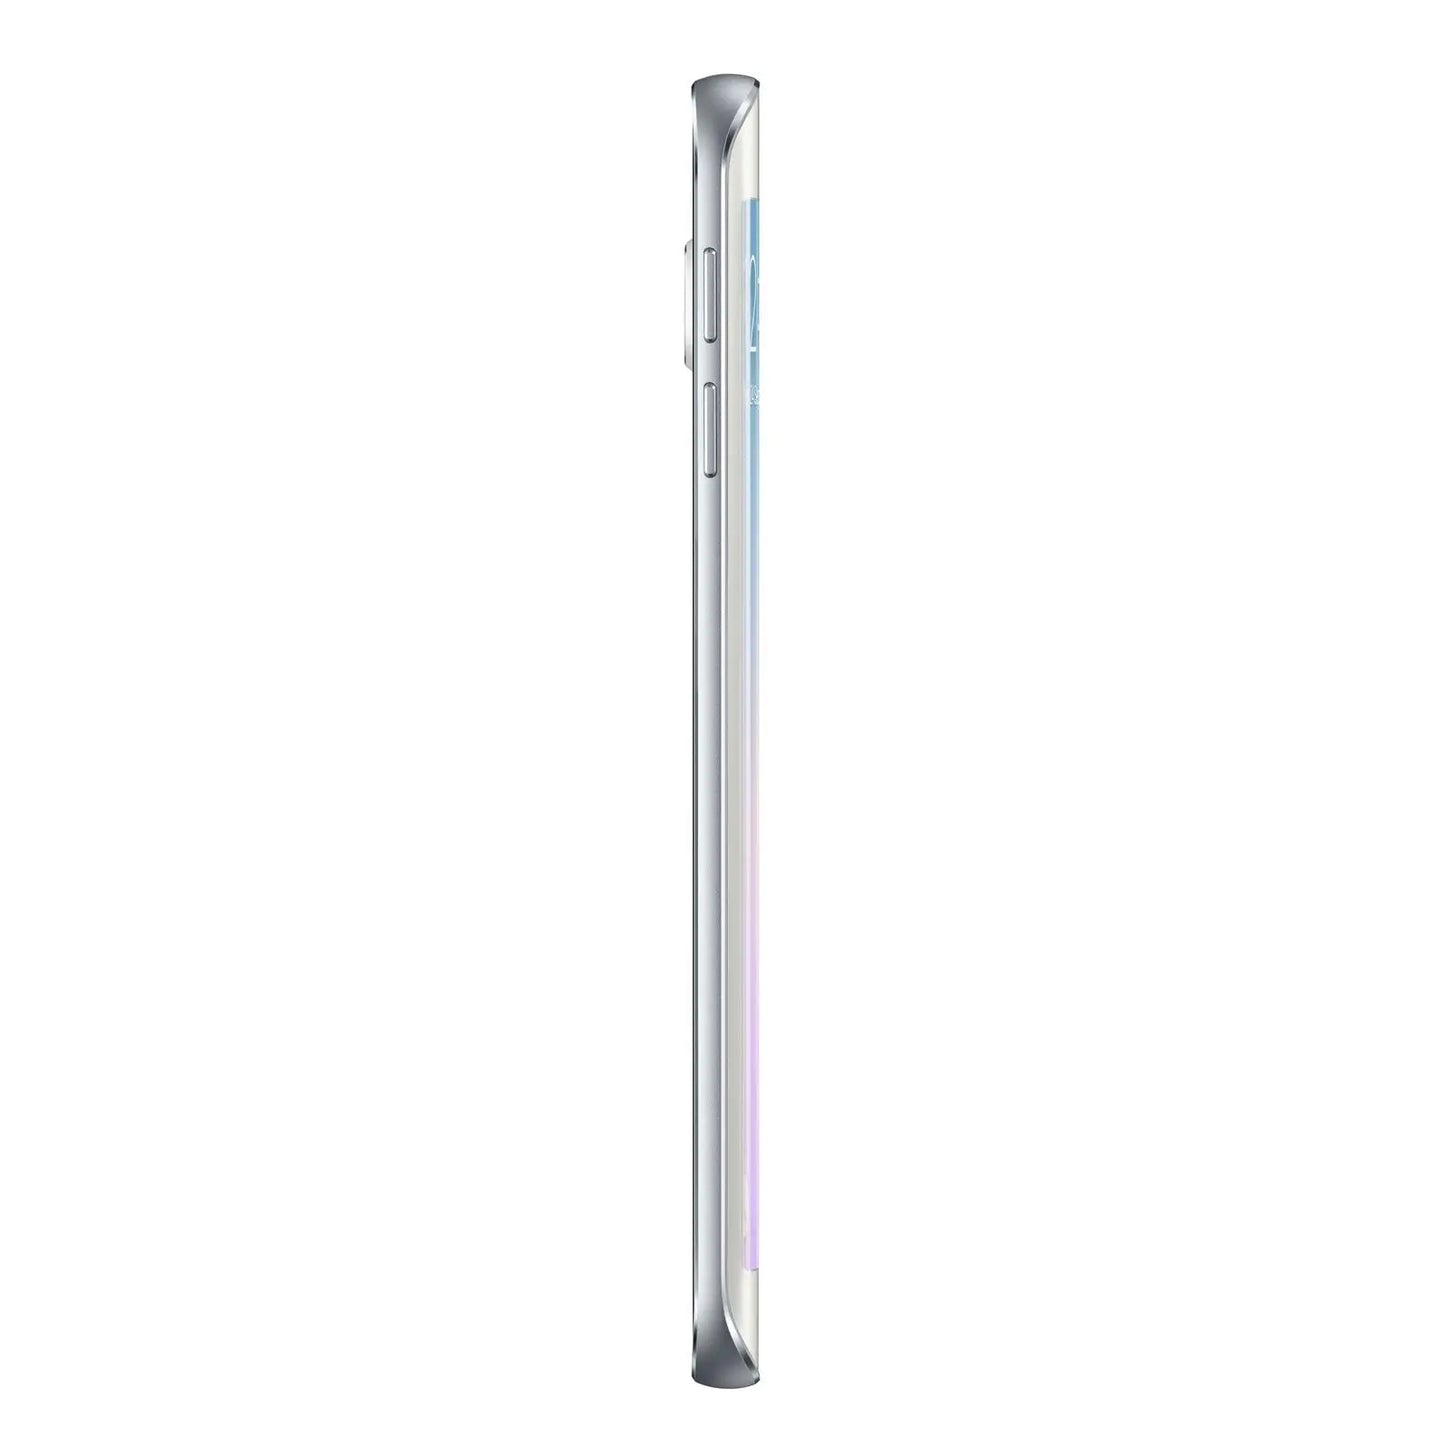 Samsung Galaxy S6 Edge SM-G925F Blanc 32 Go Samsung